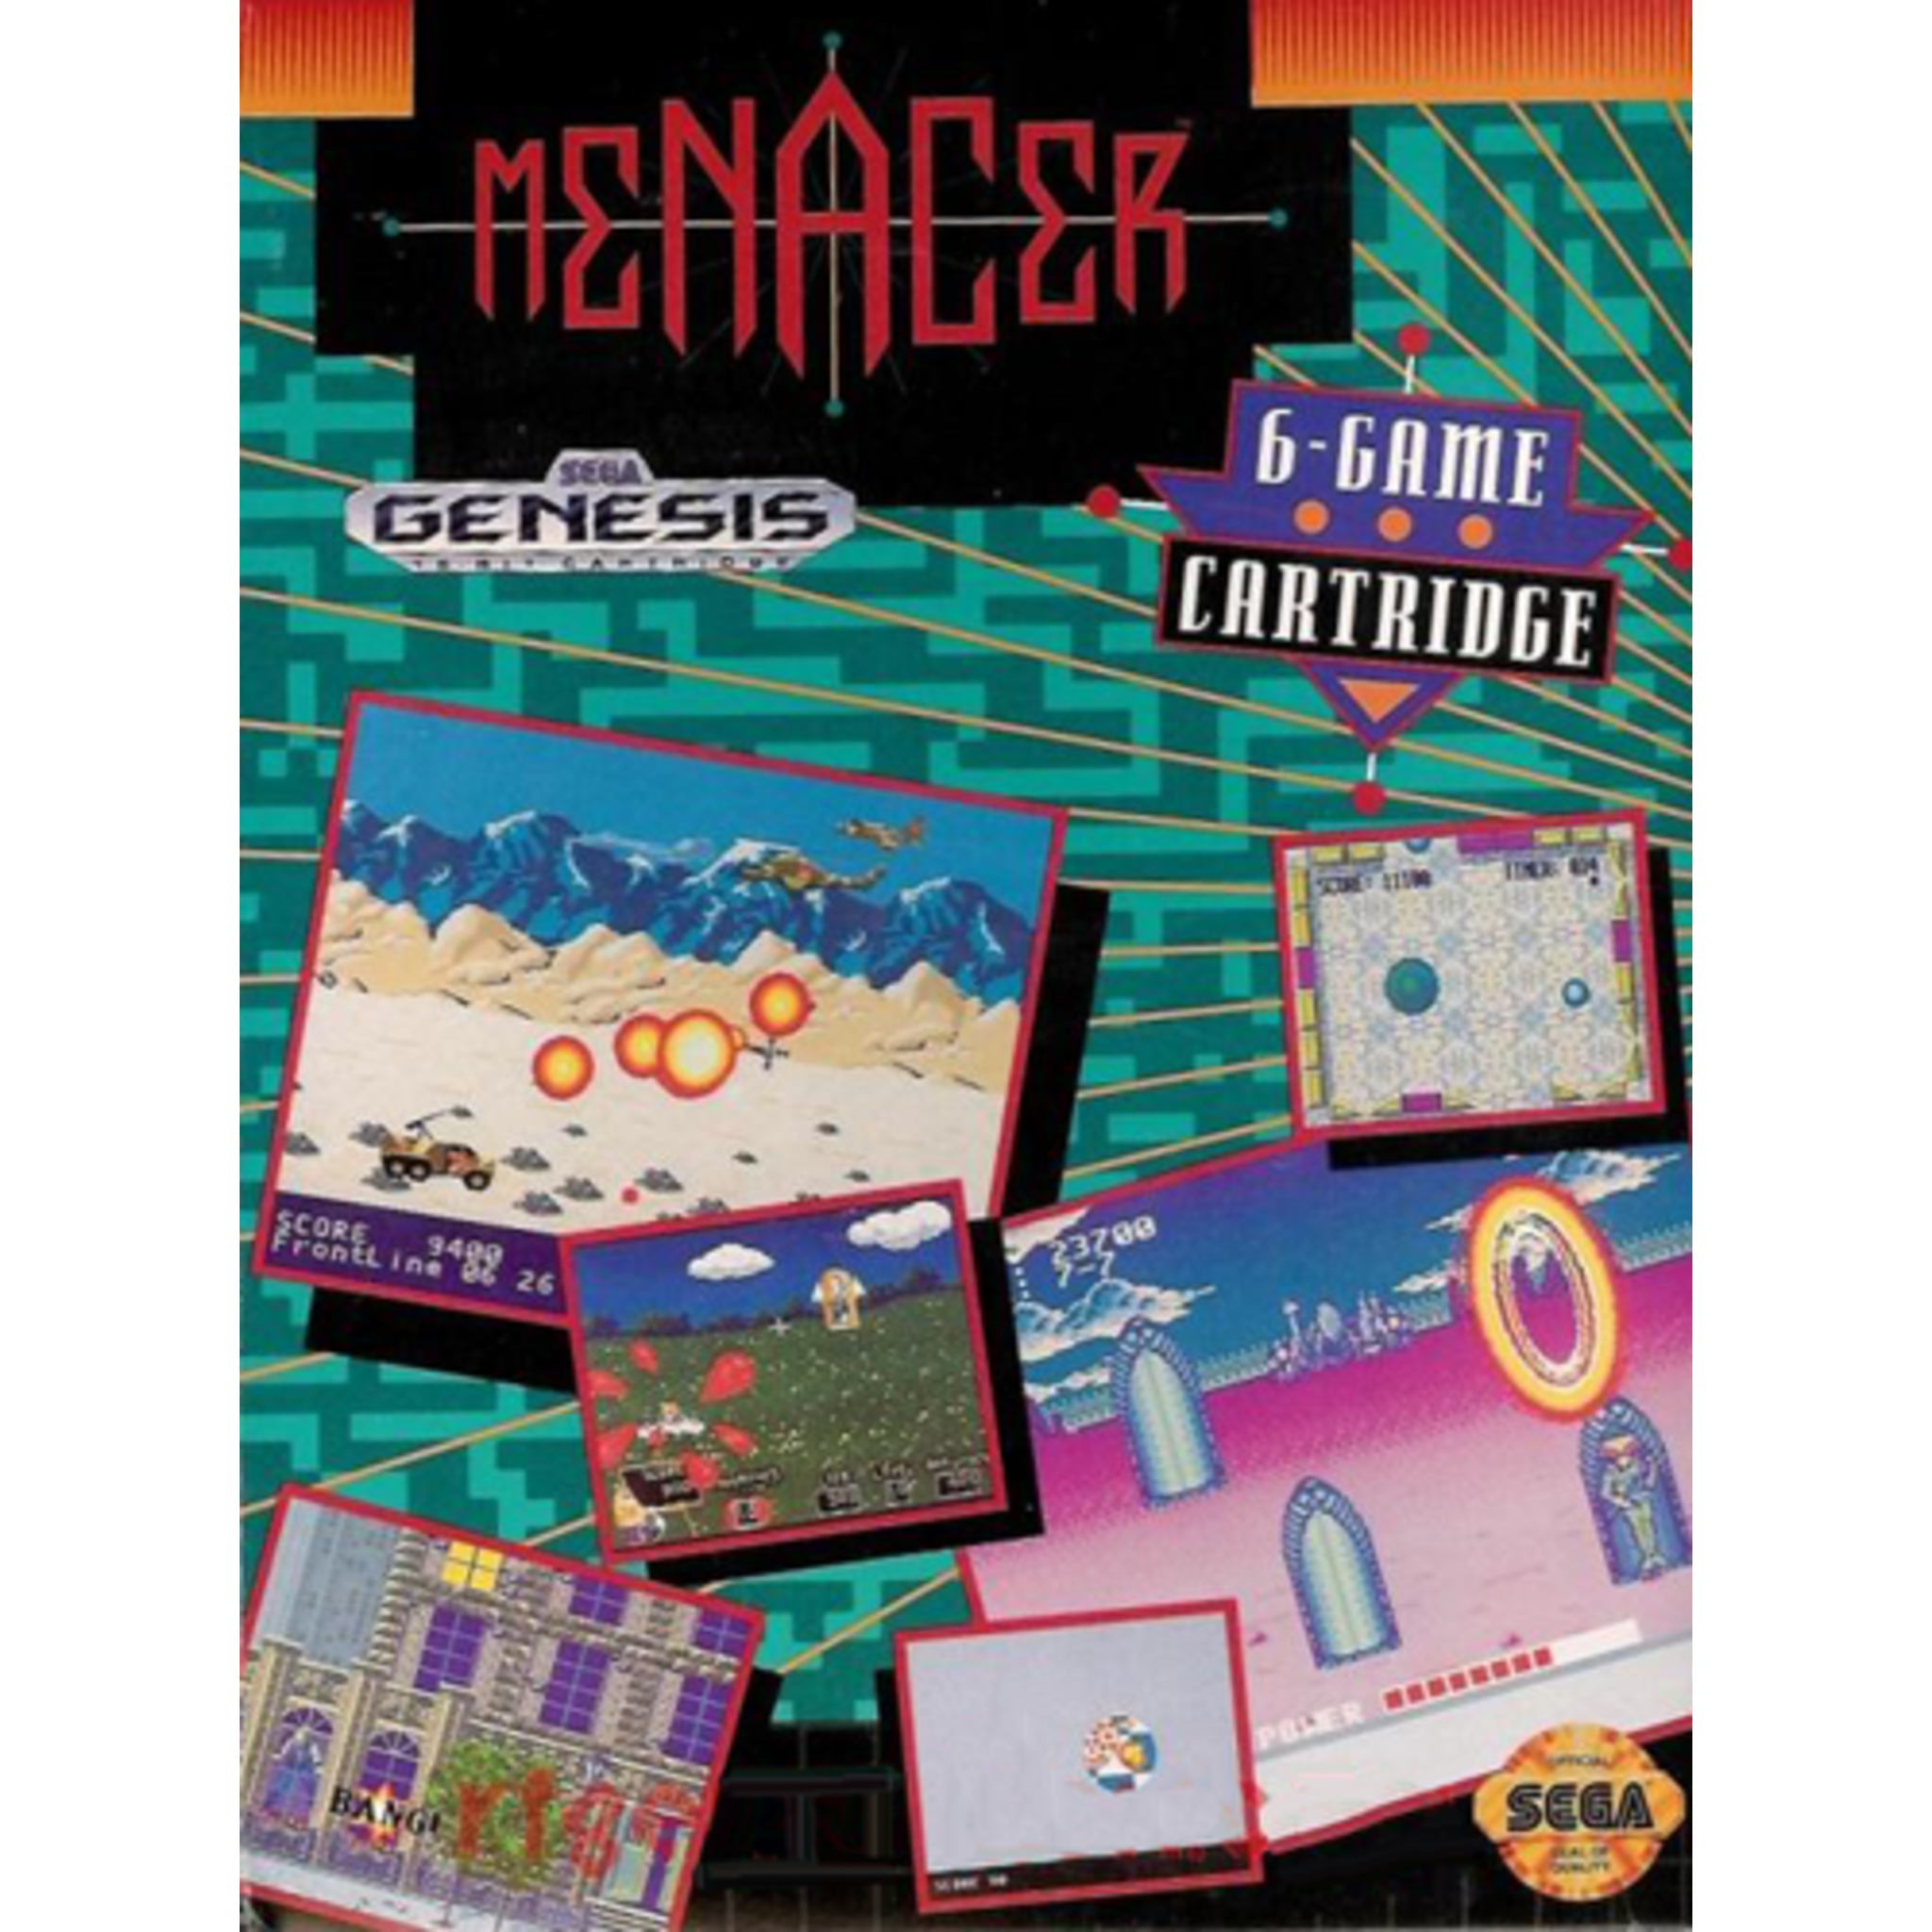 Genesis - Menacer 6-Game Cartridge (Cartridge Only)